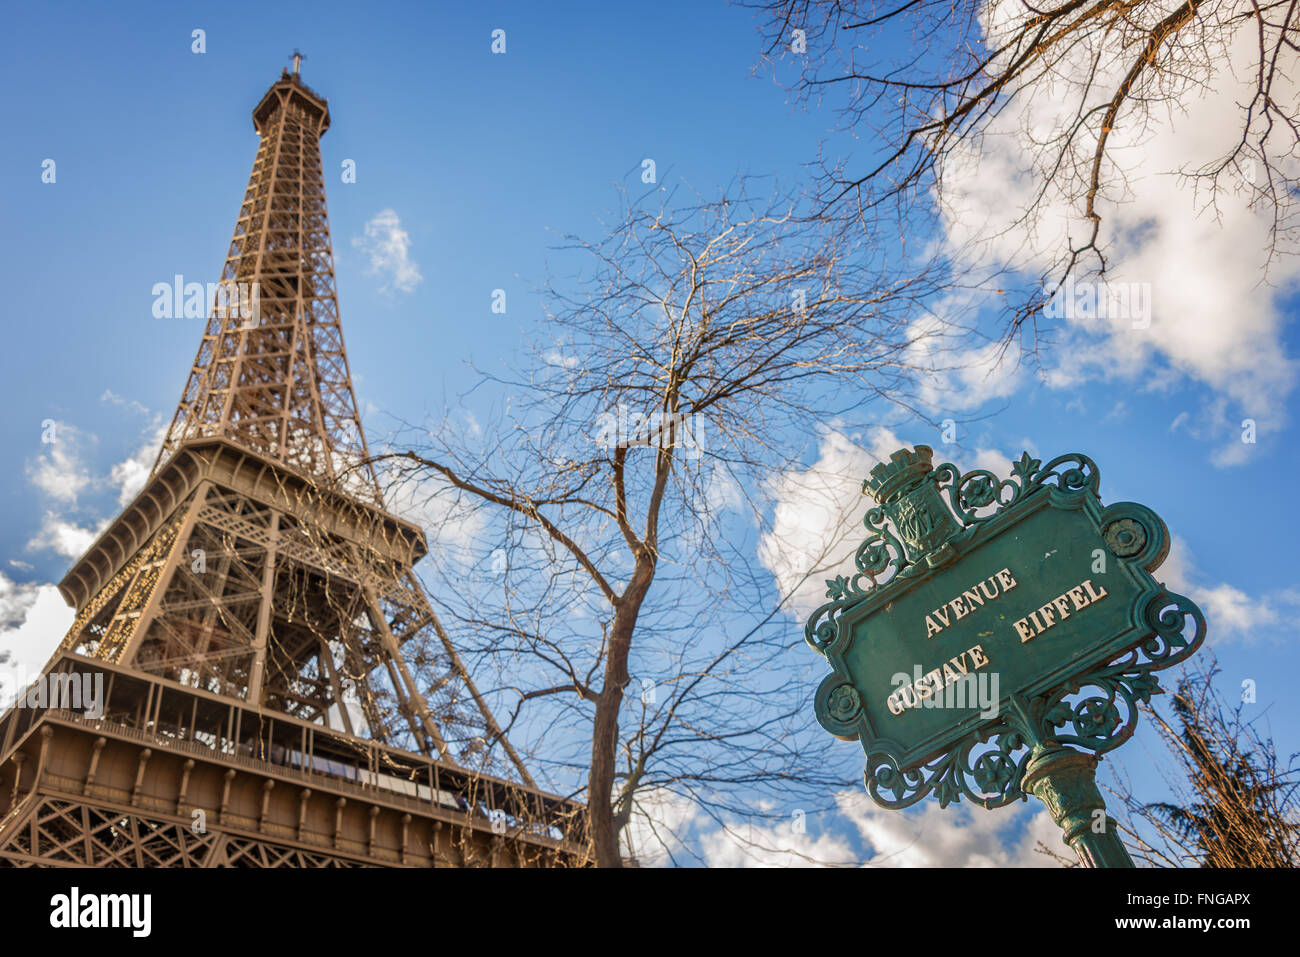 Melden Sie den Eiffelturm und Avenue Gustave Eiffel, Paris Frankreich Stockfoto